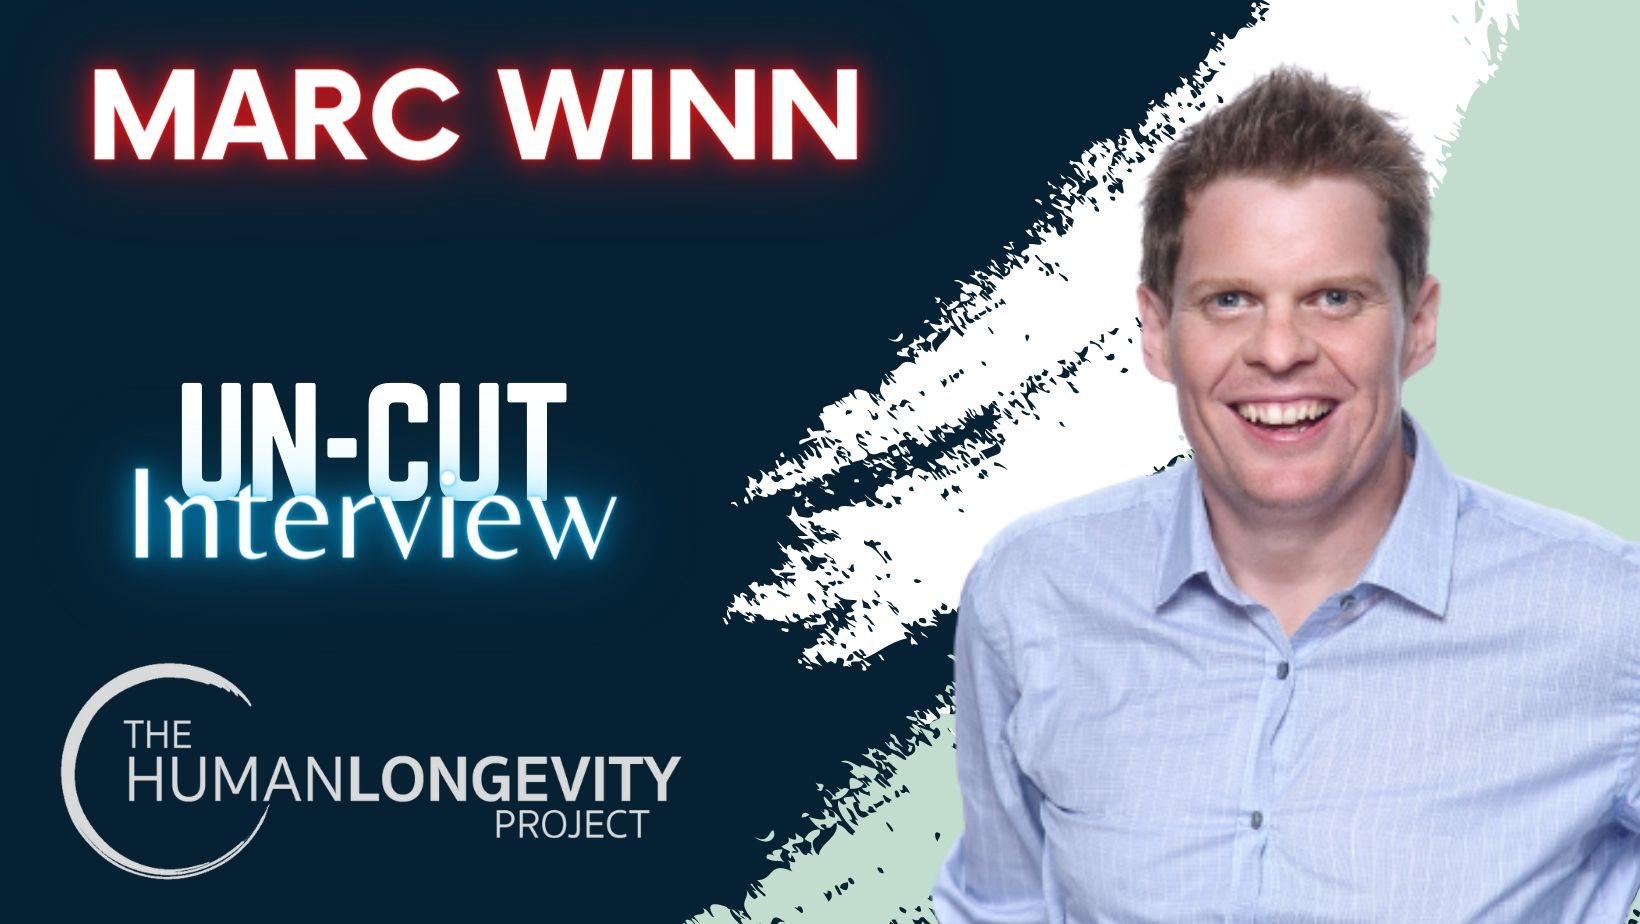 Human Longevity Project Uncut Interview With Marc Winn